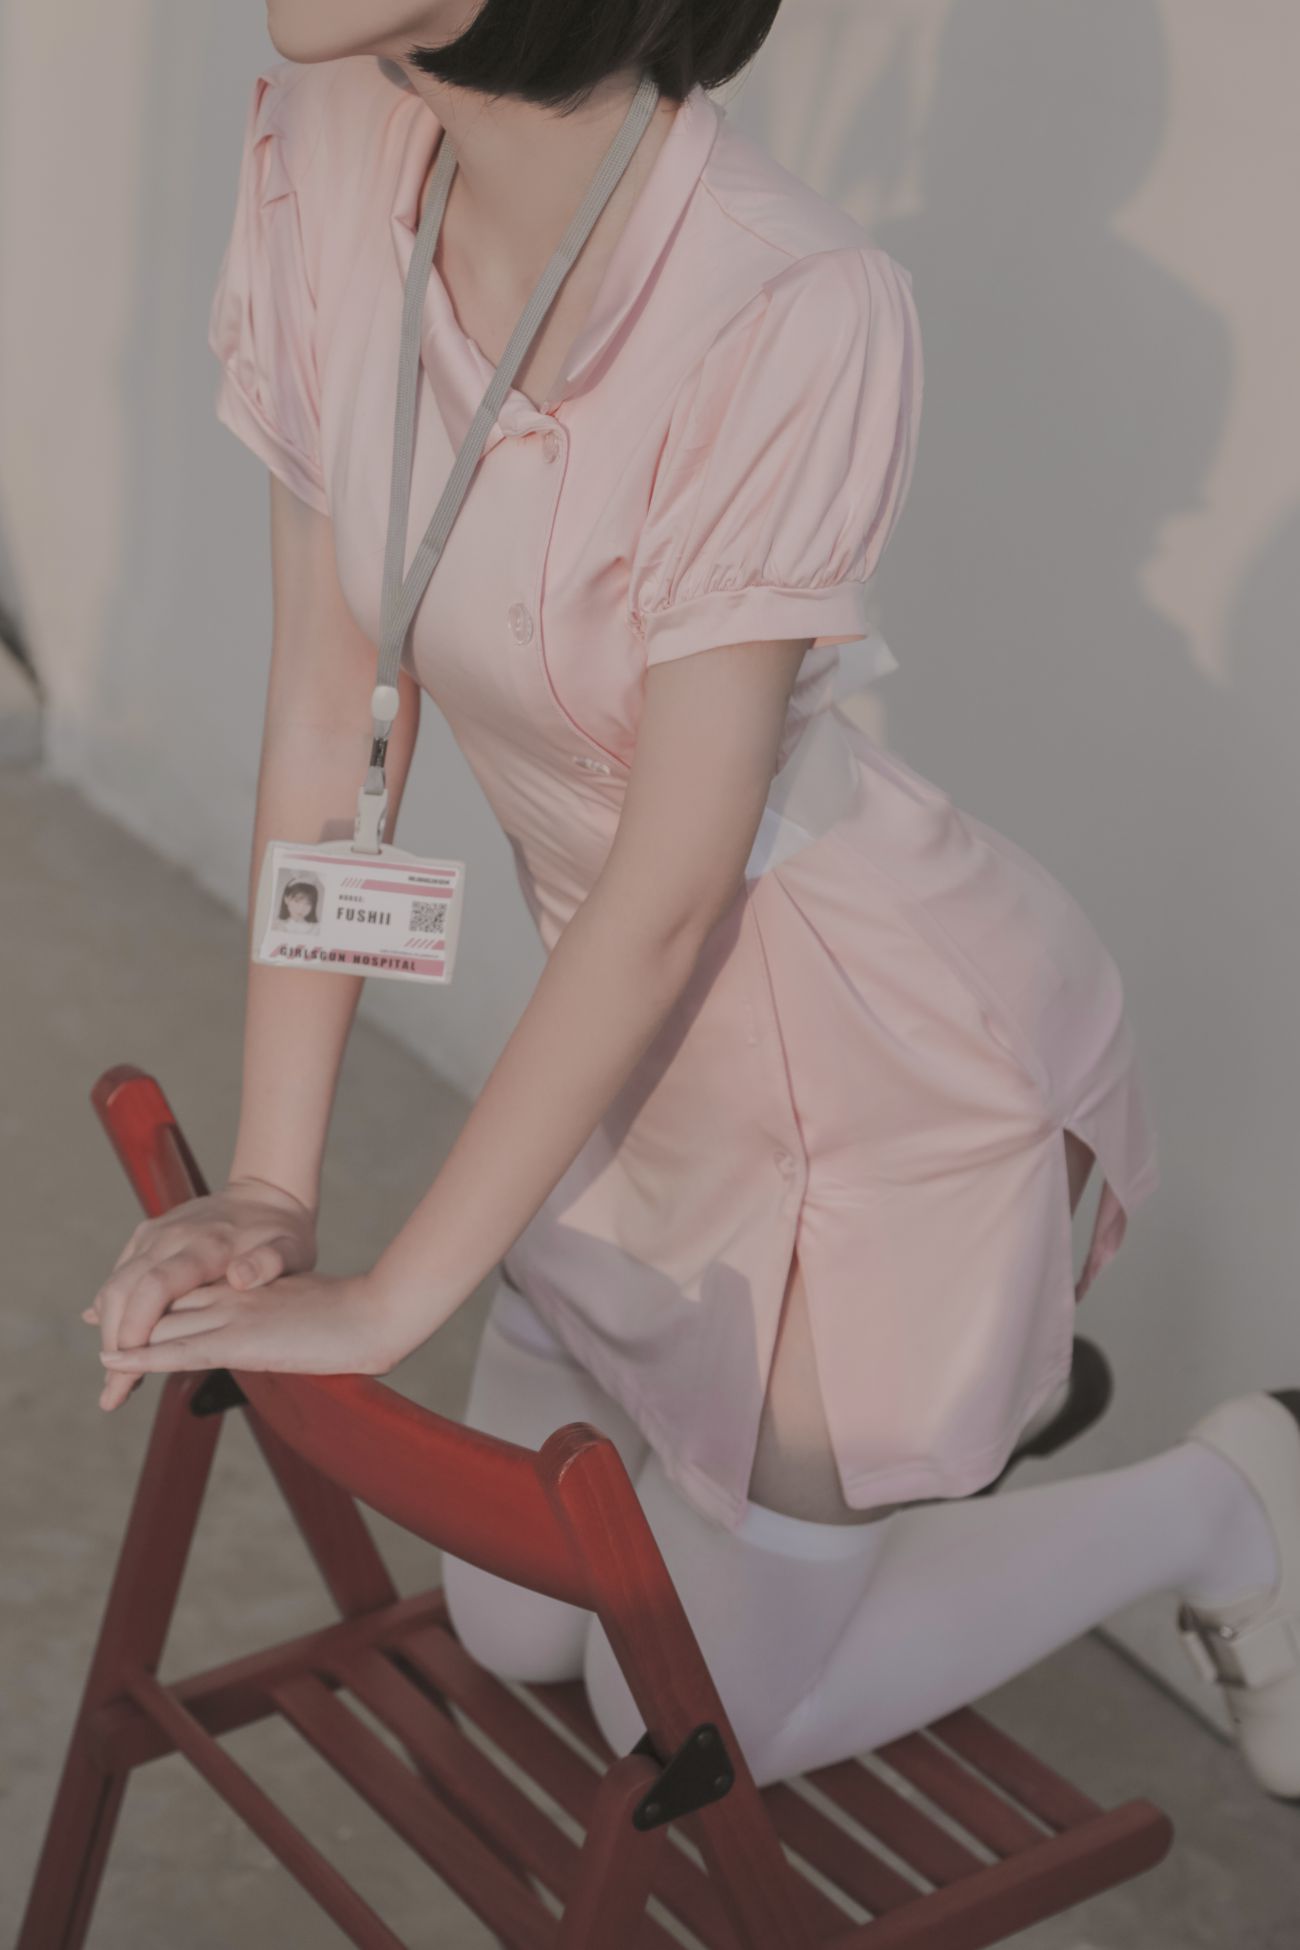 微博美少女Fushii海堂Cosplay性感写真护士 (23)